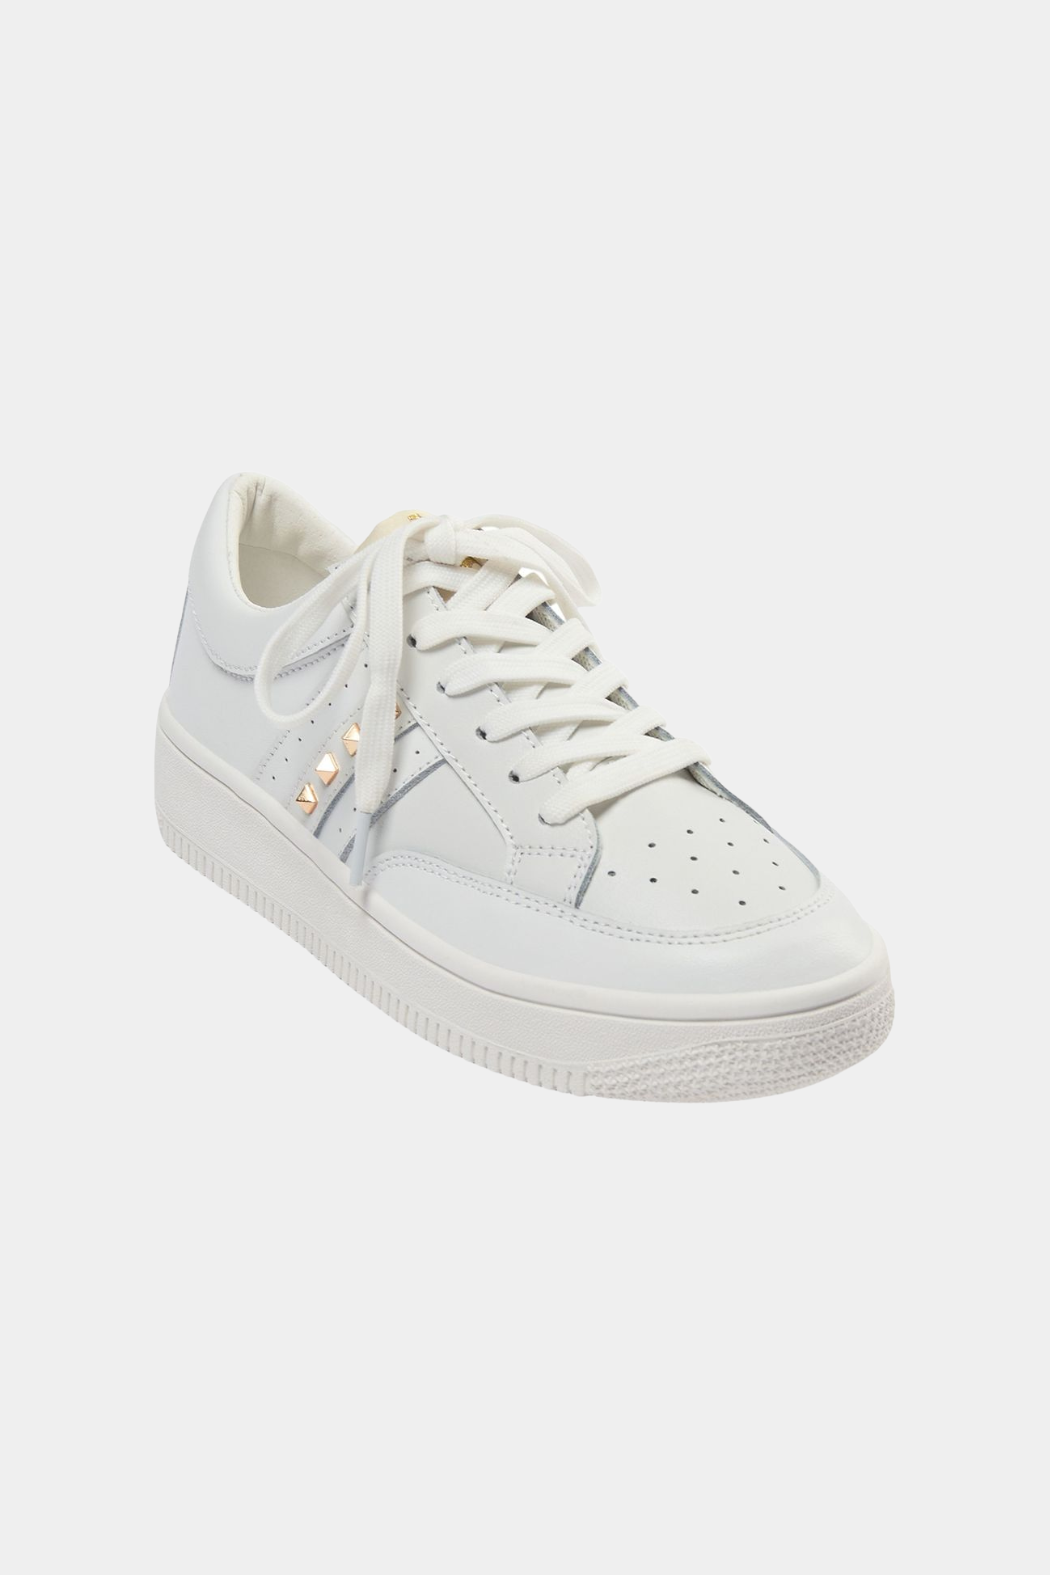 T412 sneaker, white